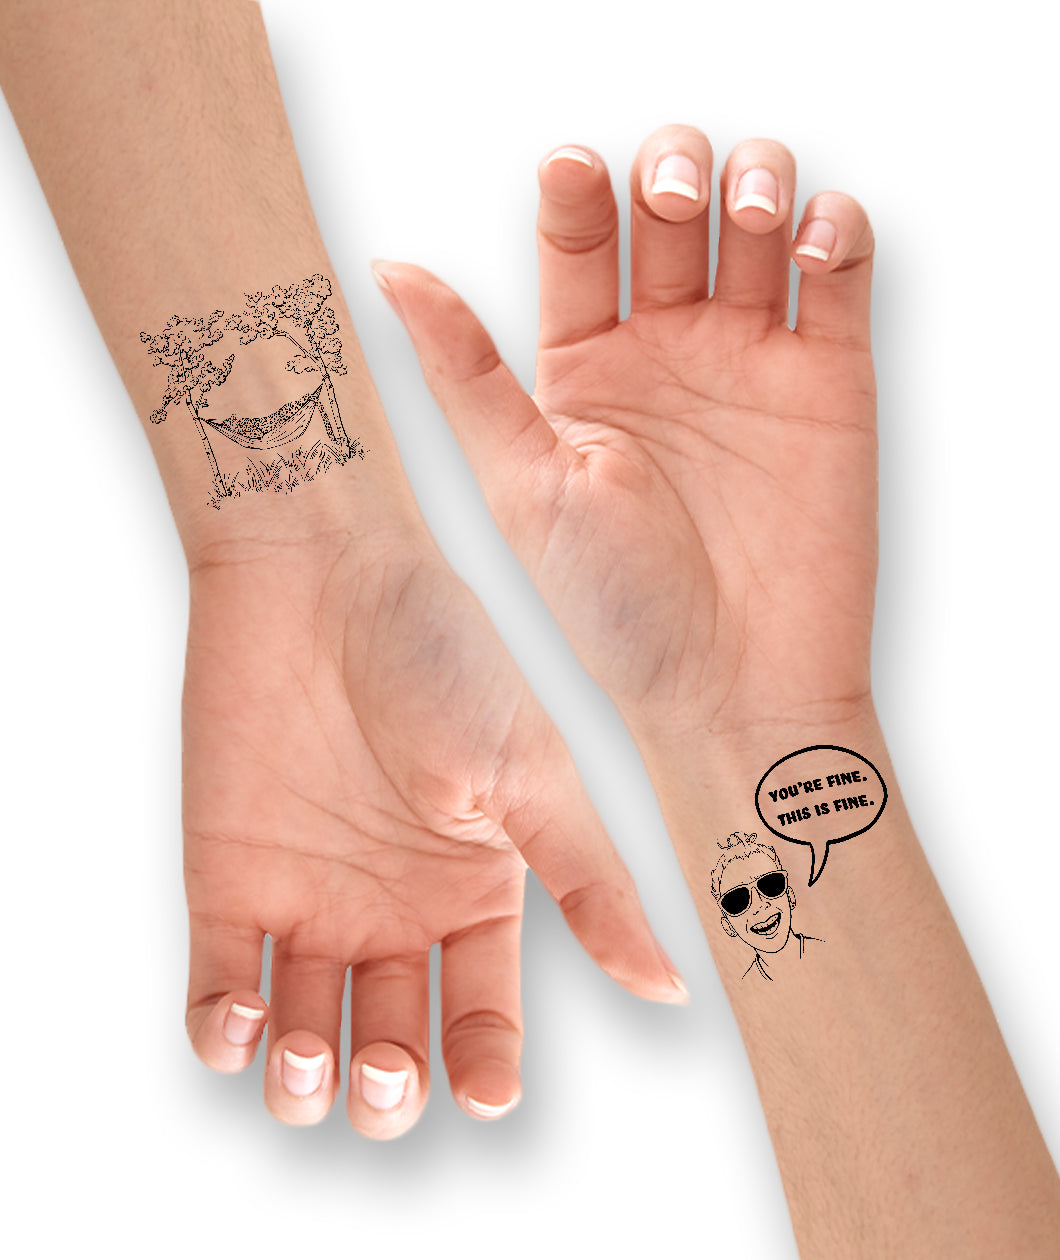 10 Minimalist Wrist Tattoo Ideas To Try